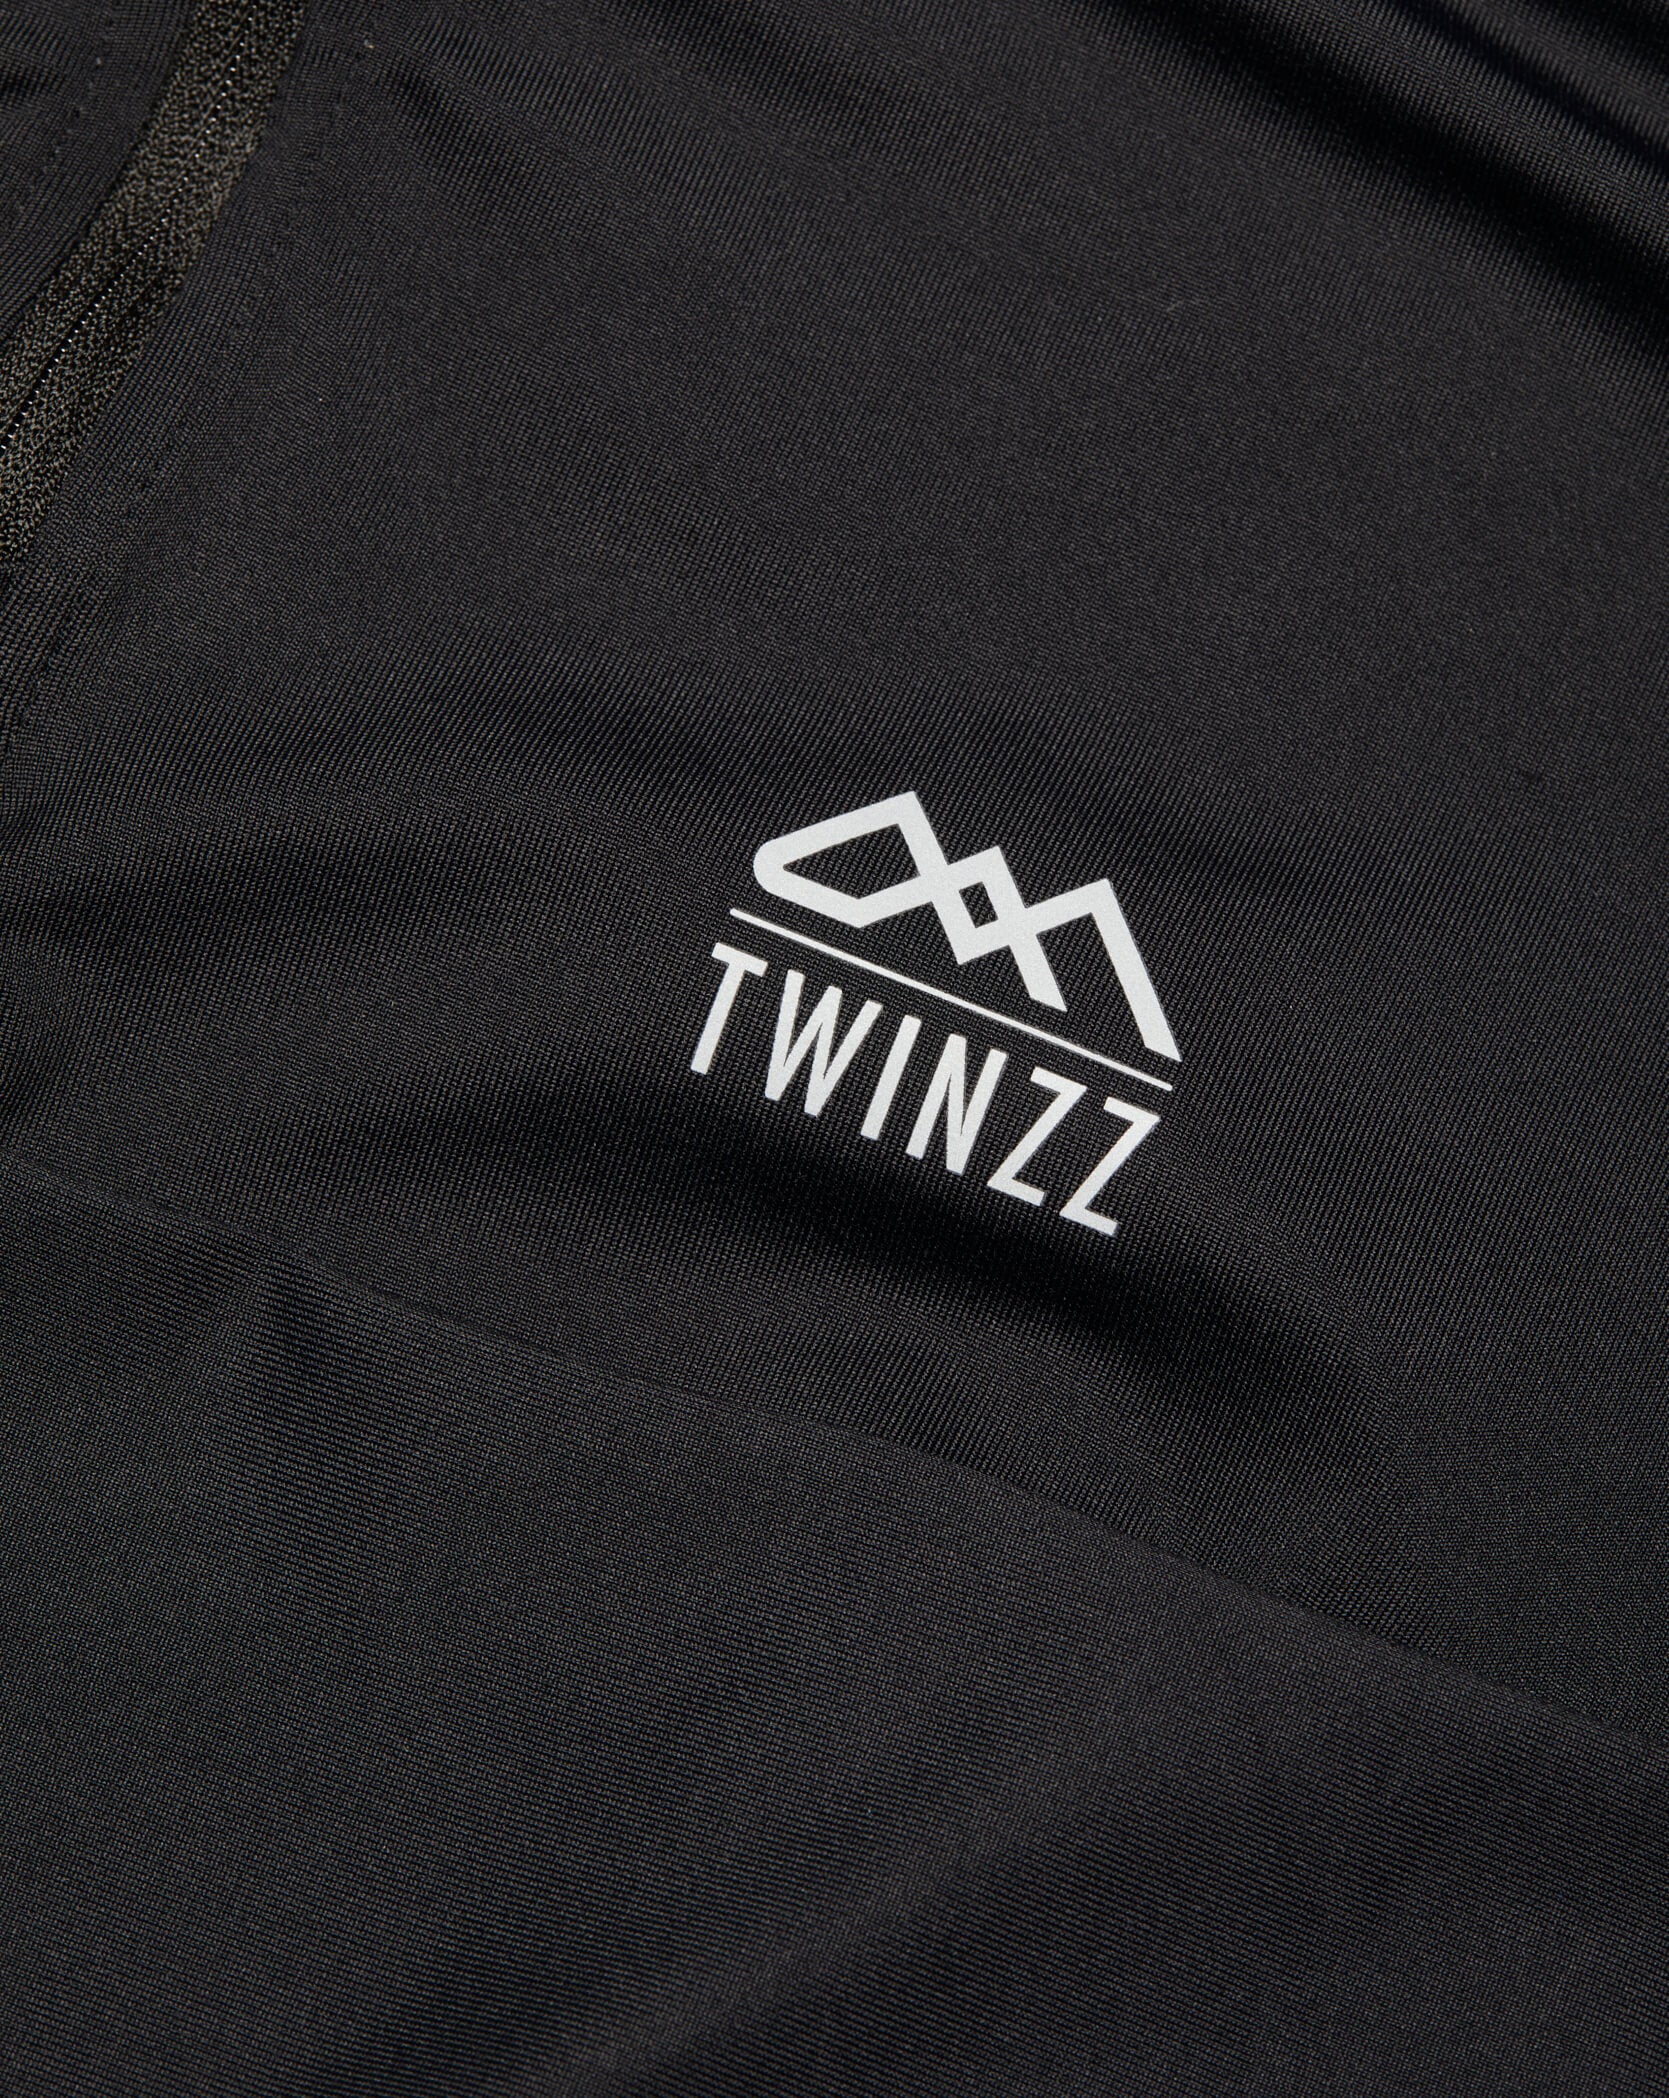 Black Twinzz activewear zip top logo